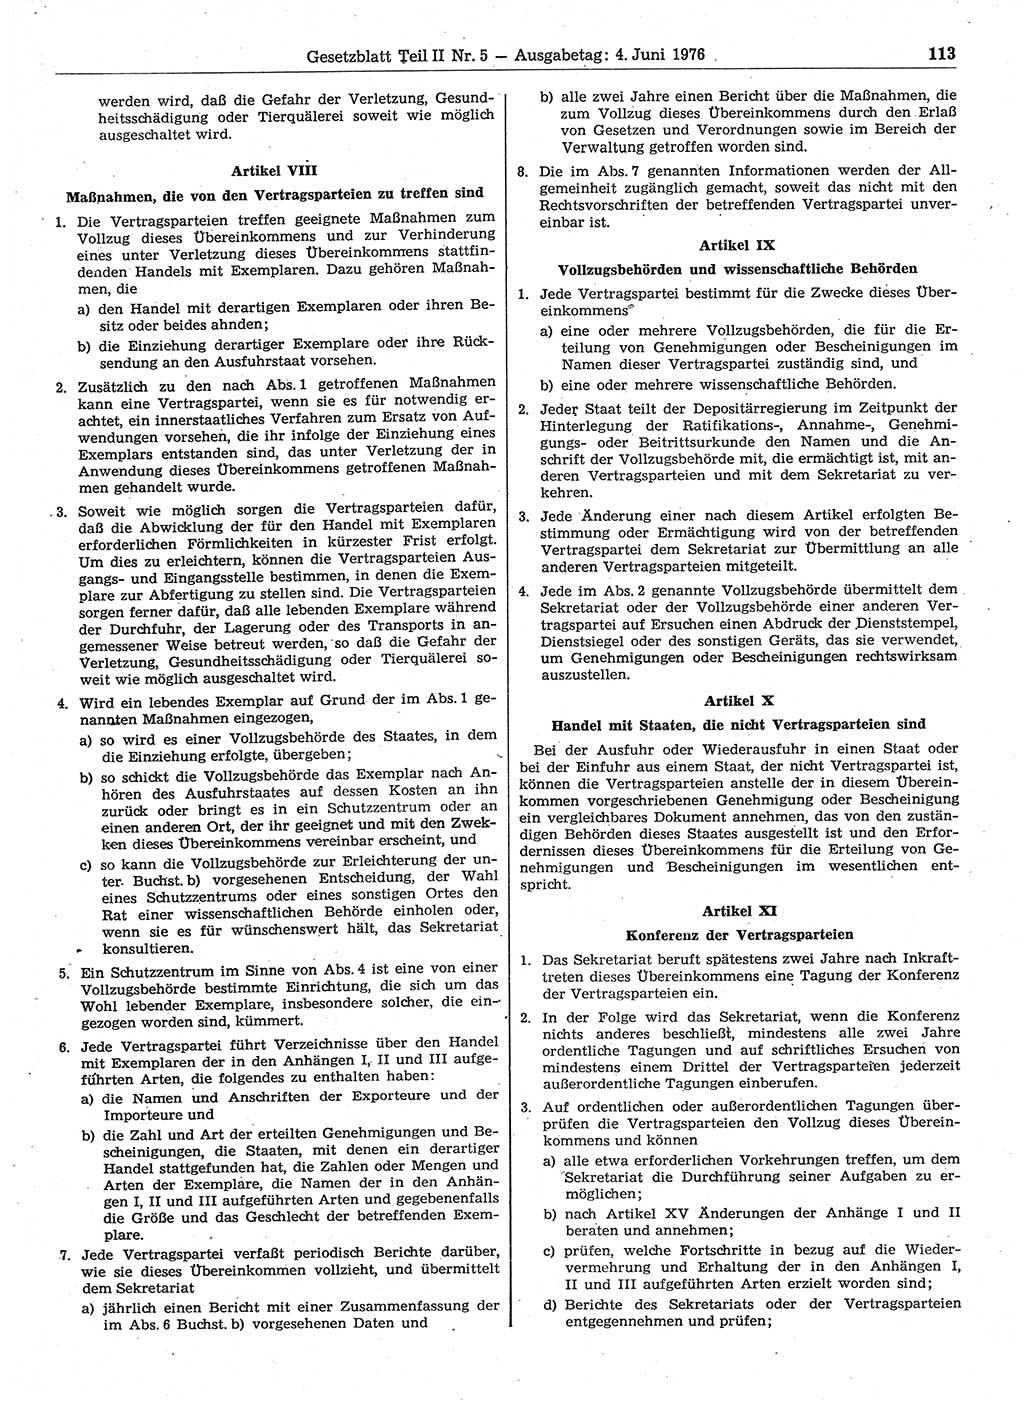 Gesetzblatt (GBl.) der Deutschen Demokratischen Republik (DDR) Teil ⅠⅠ 1976, Seite 113 (GBl. DDR ⅠⅠ 1976, S. 113)